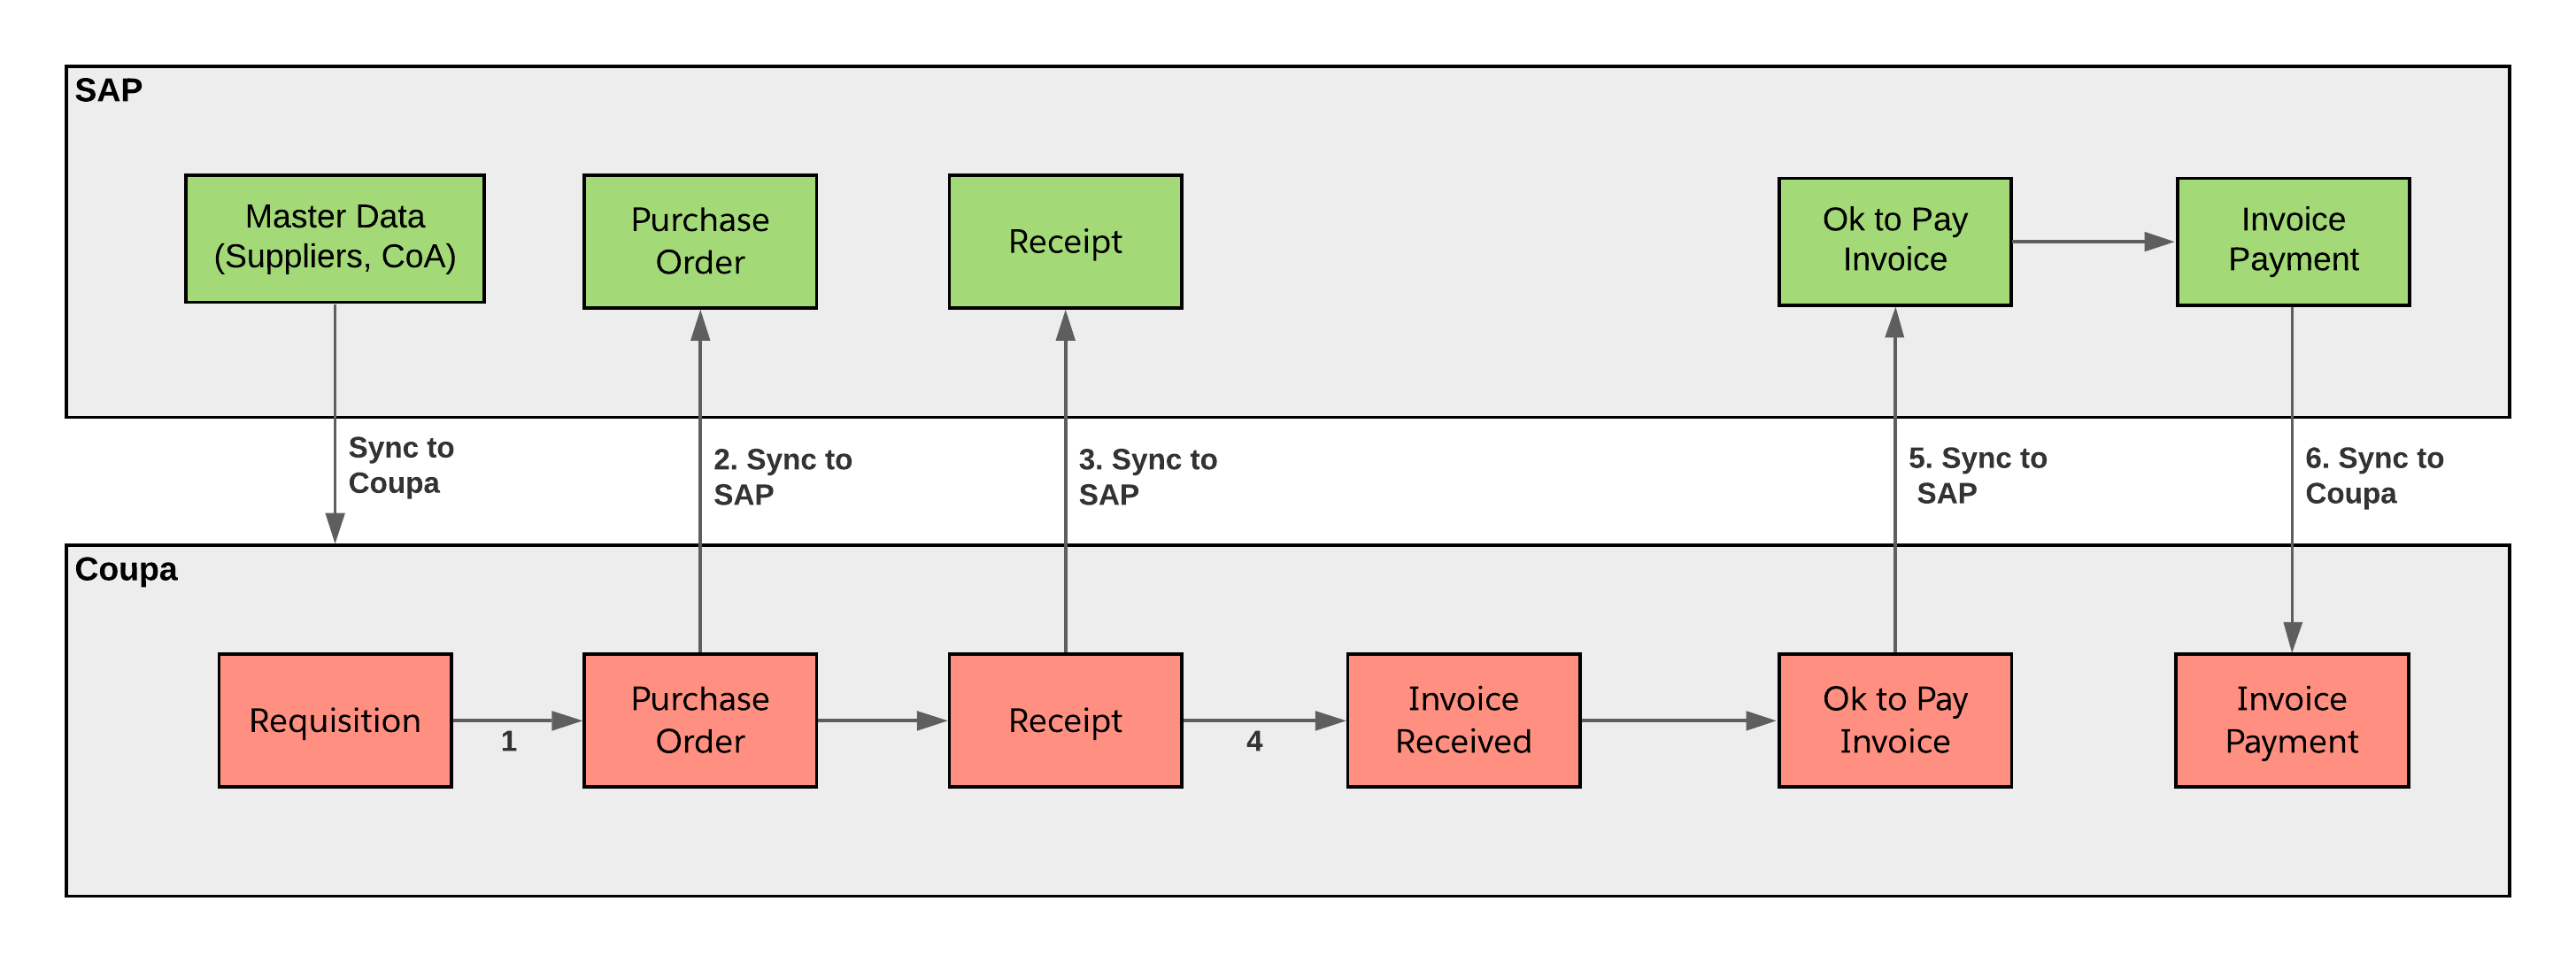 sap-p2p-workflow-diagram.png